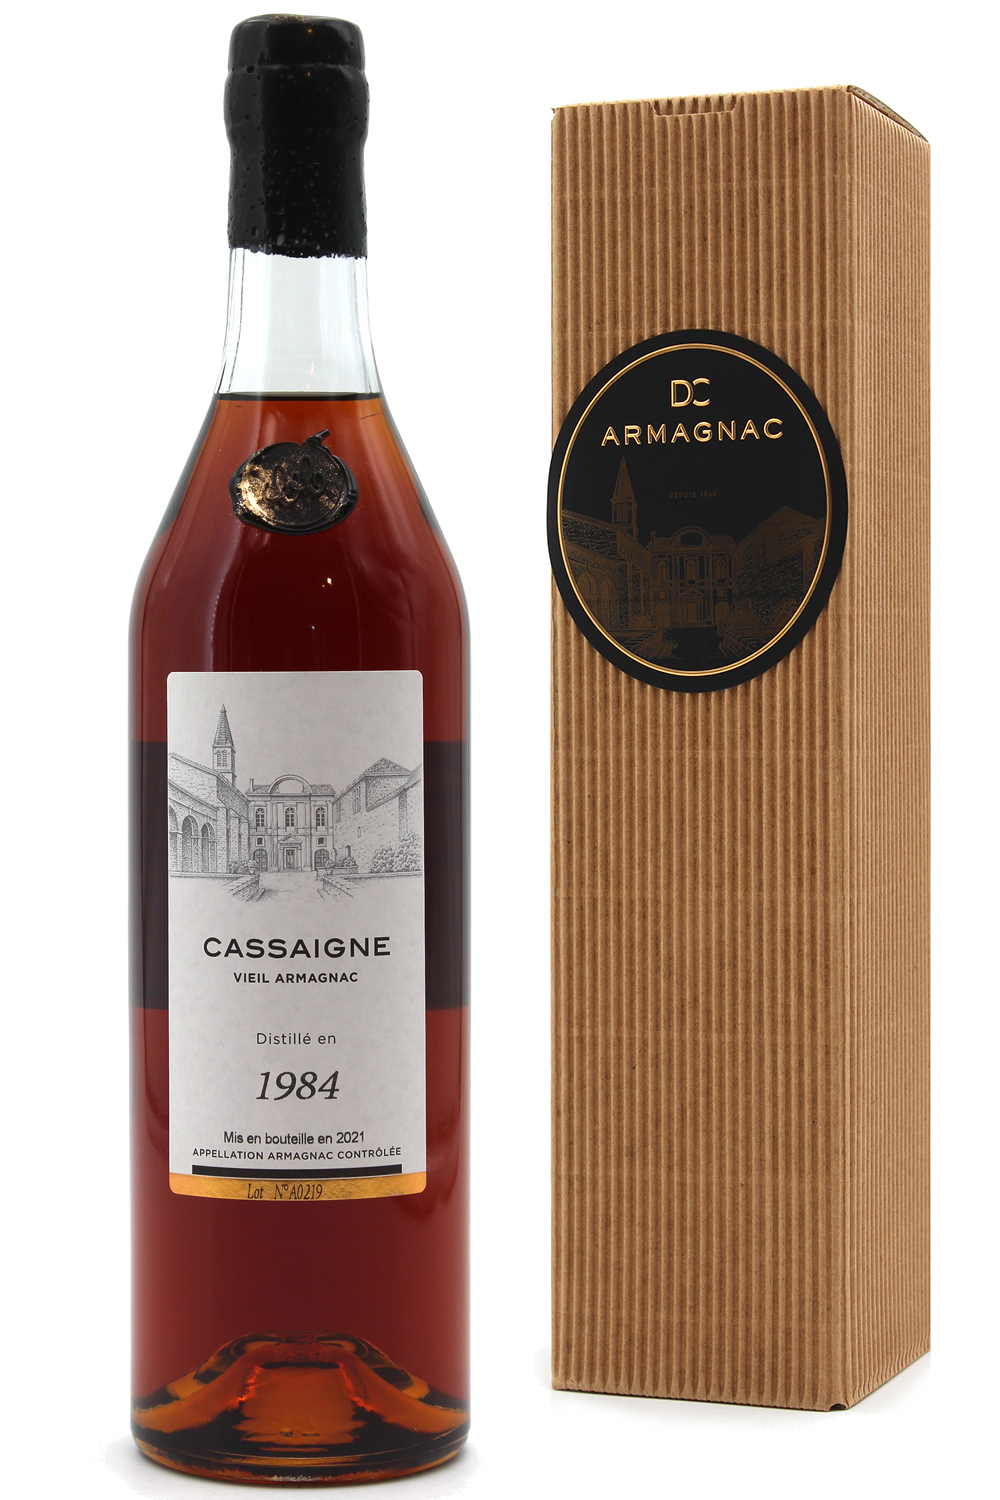 Armagnac cassaigne 1984